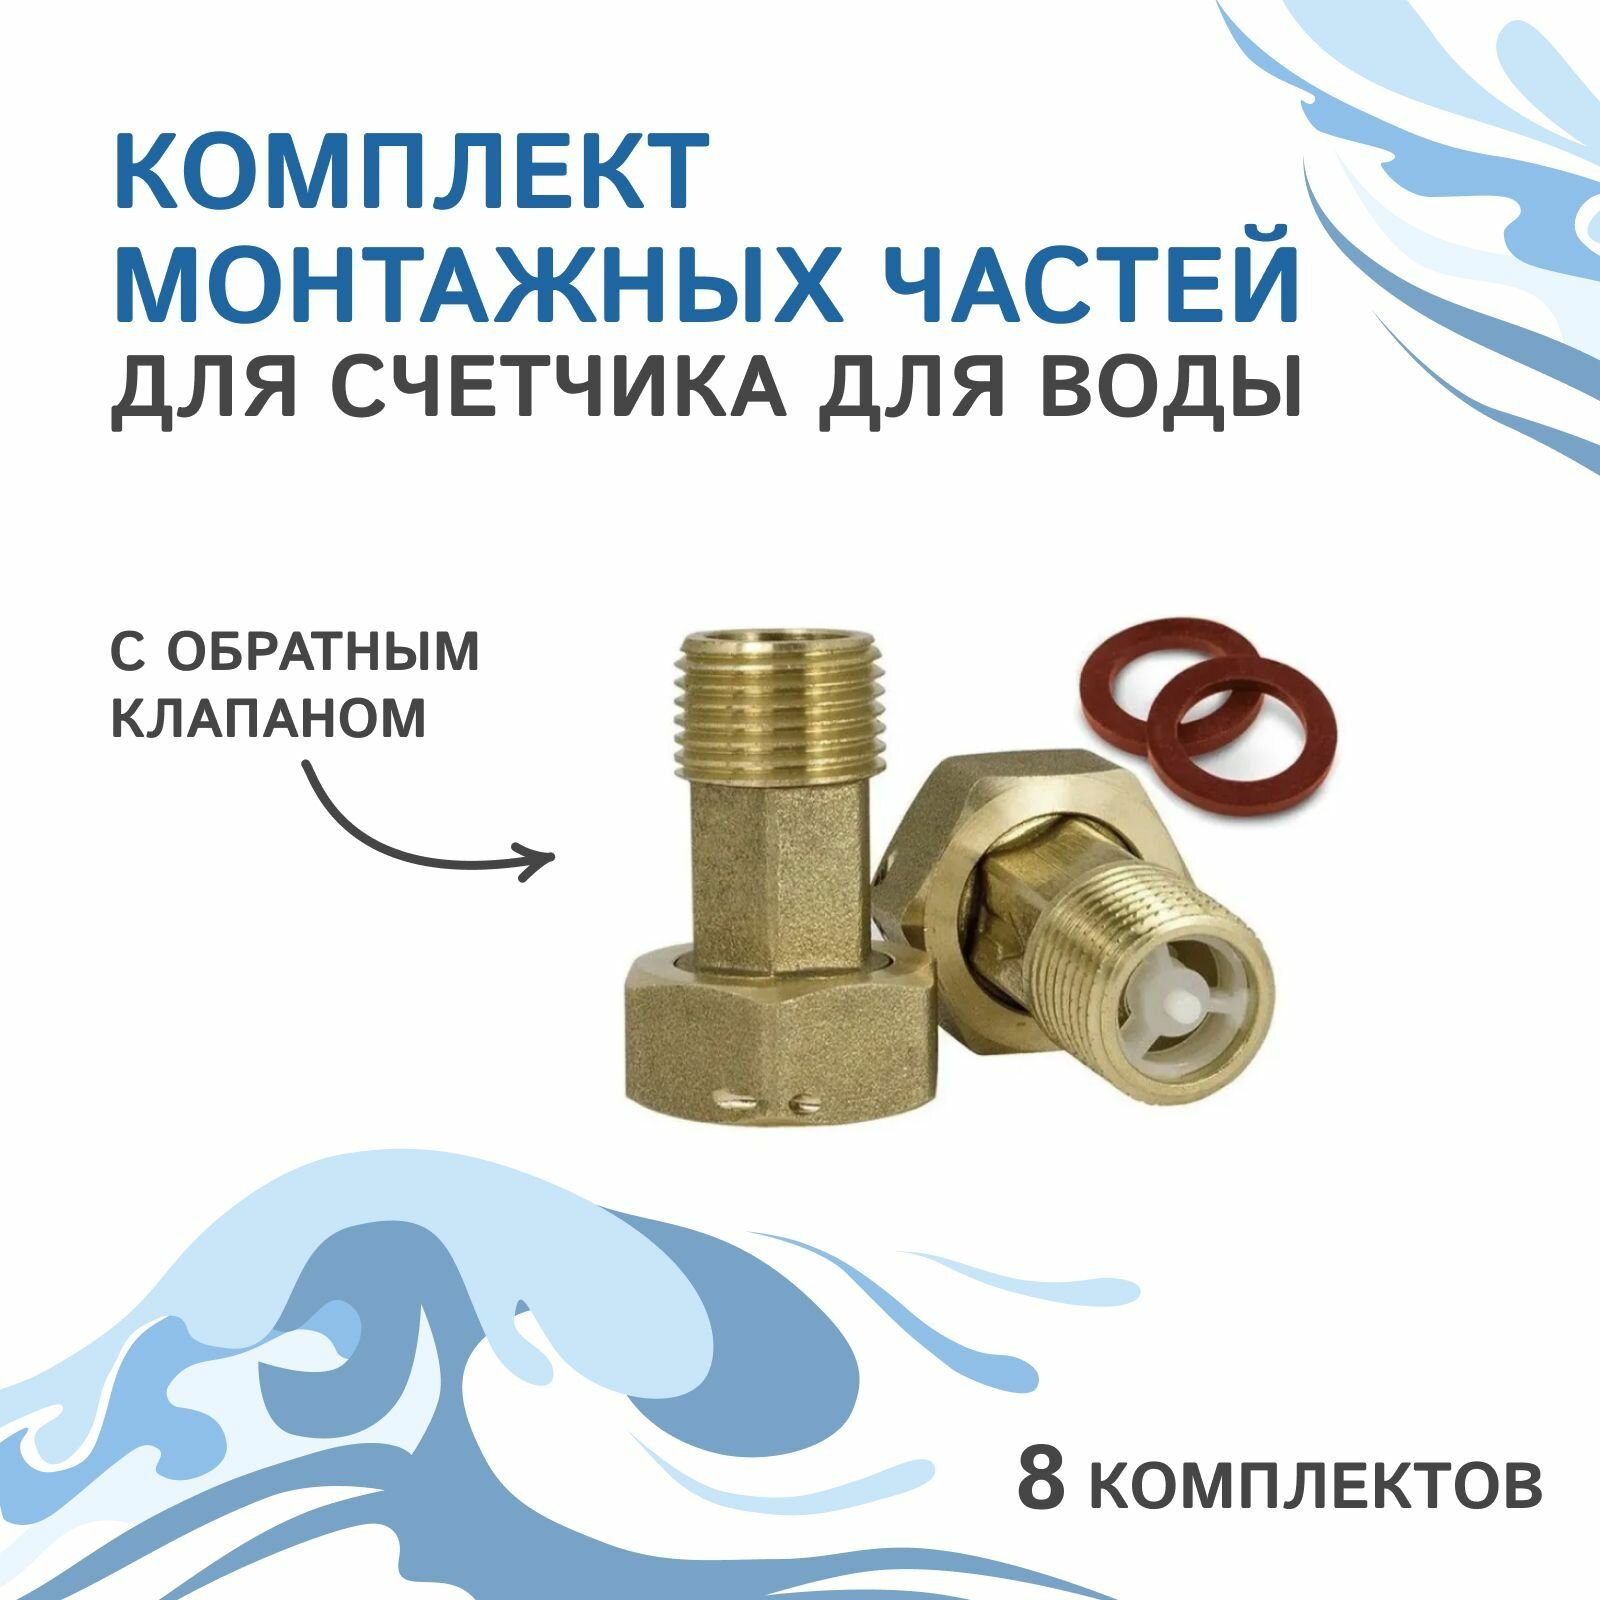 Комплект монтажных частей для счетчика для воды с обратным клапаном 4 комп (8 шт.).